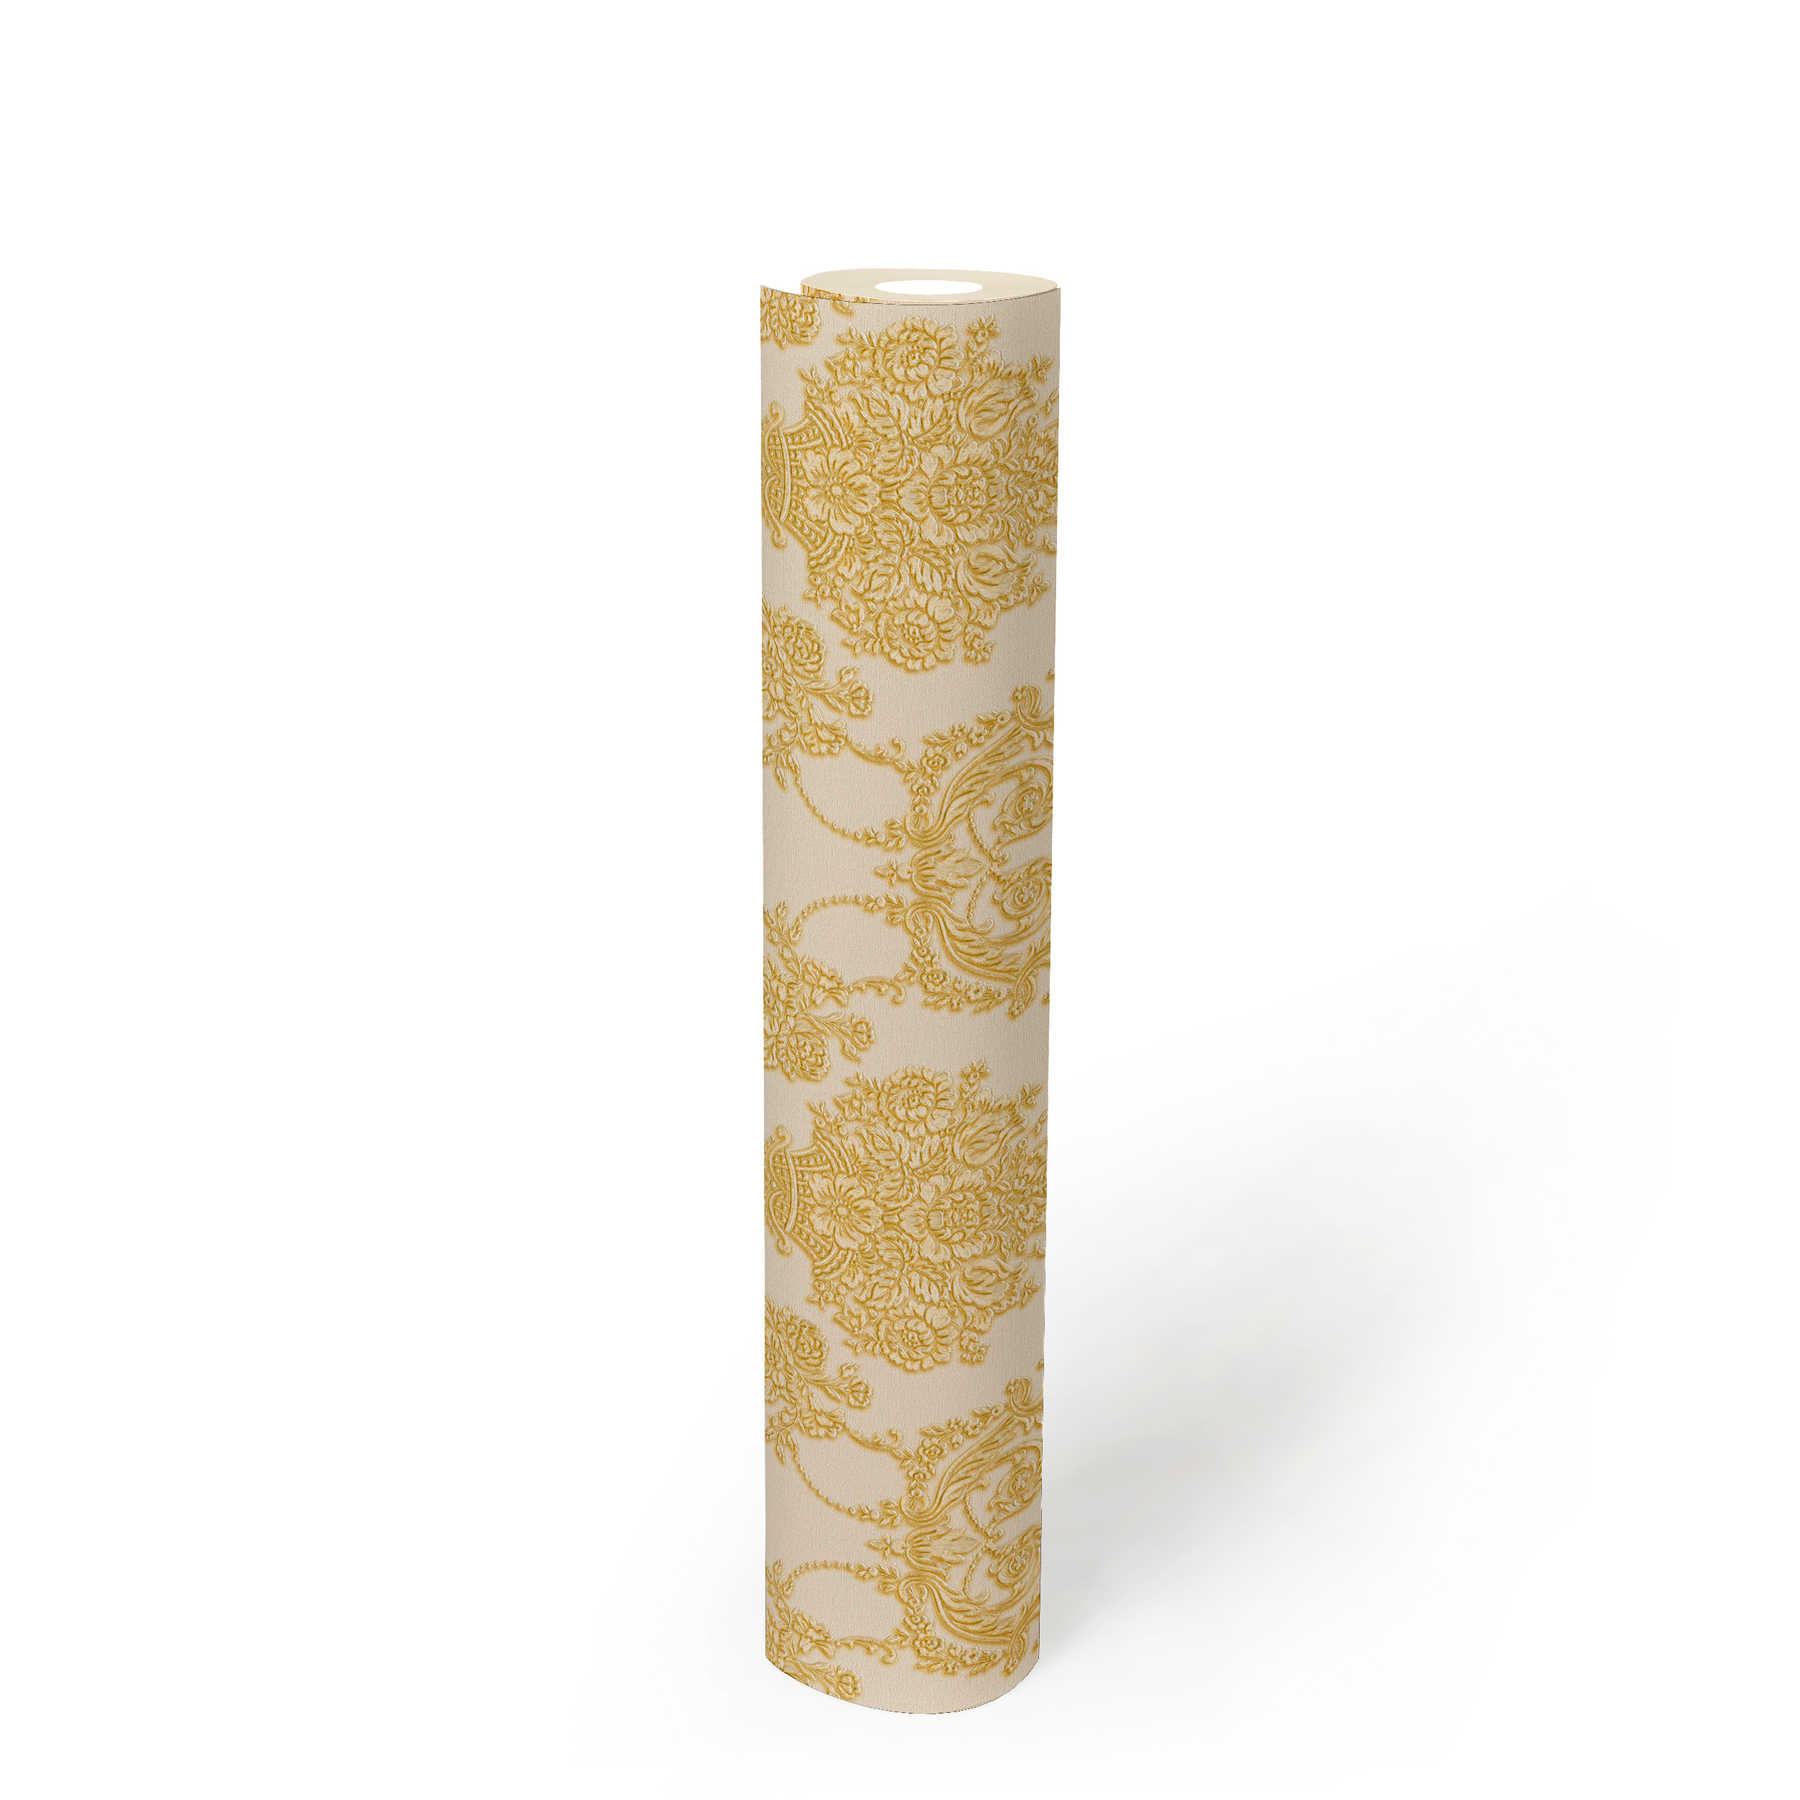             Goldene Barock-Tapete mit floralem Muster – Creme, Metallic
        